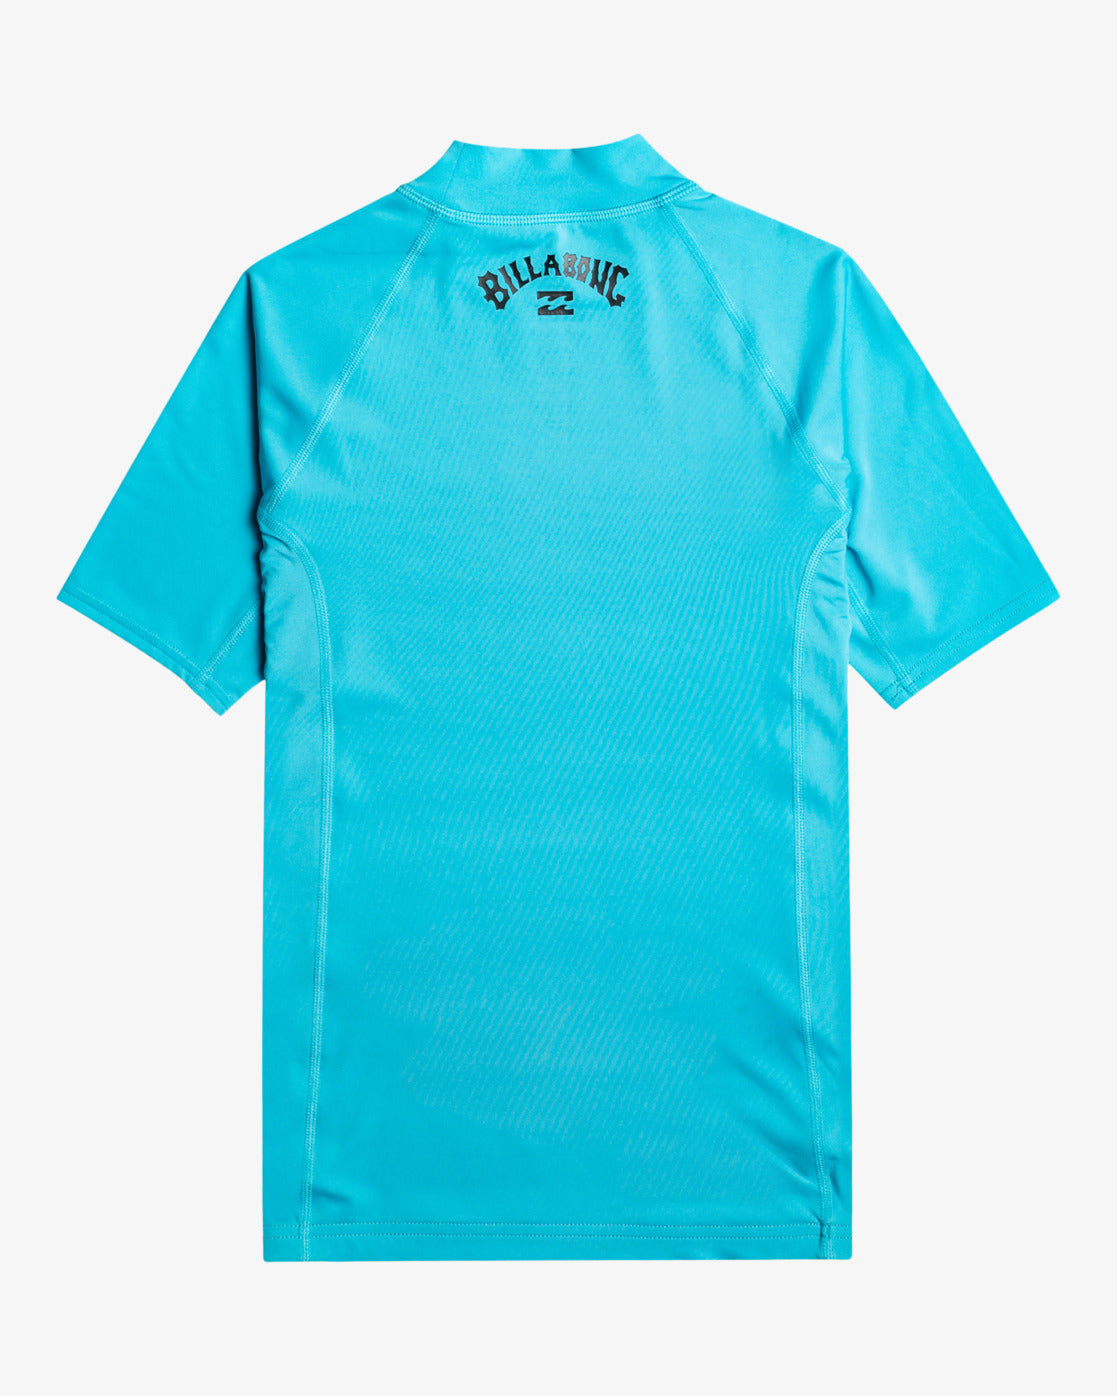 Waves All Day - Rash Vest UPF 50 a Maniche Corte da Ragazzo bright blue